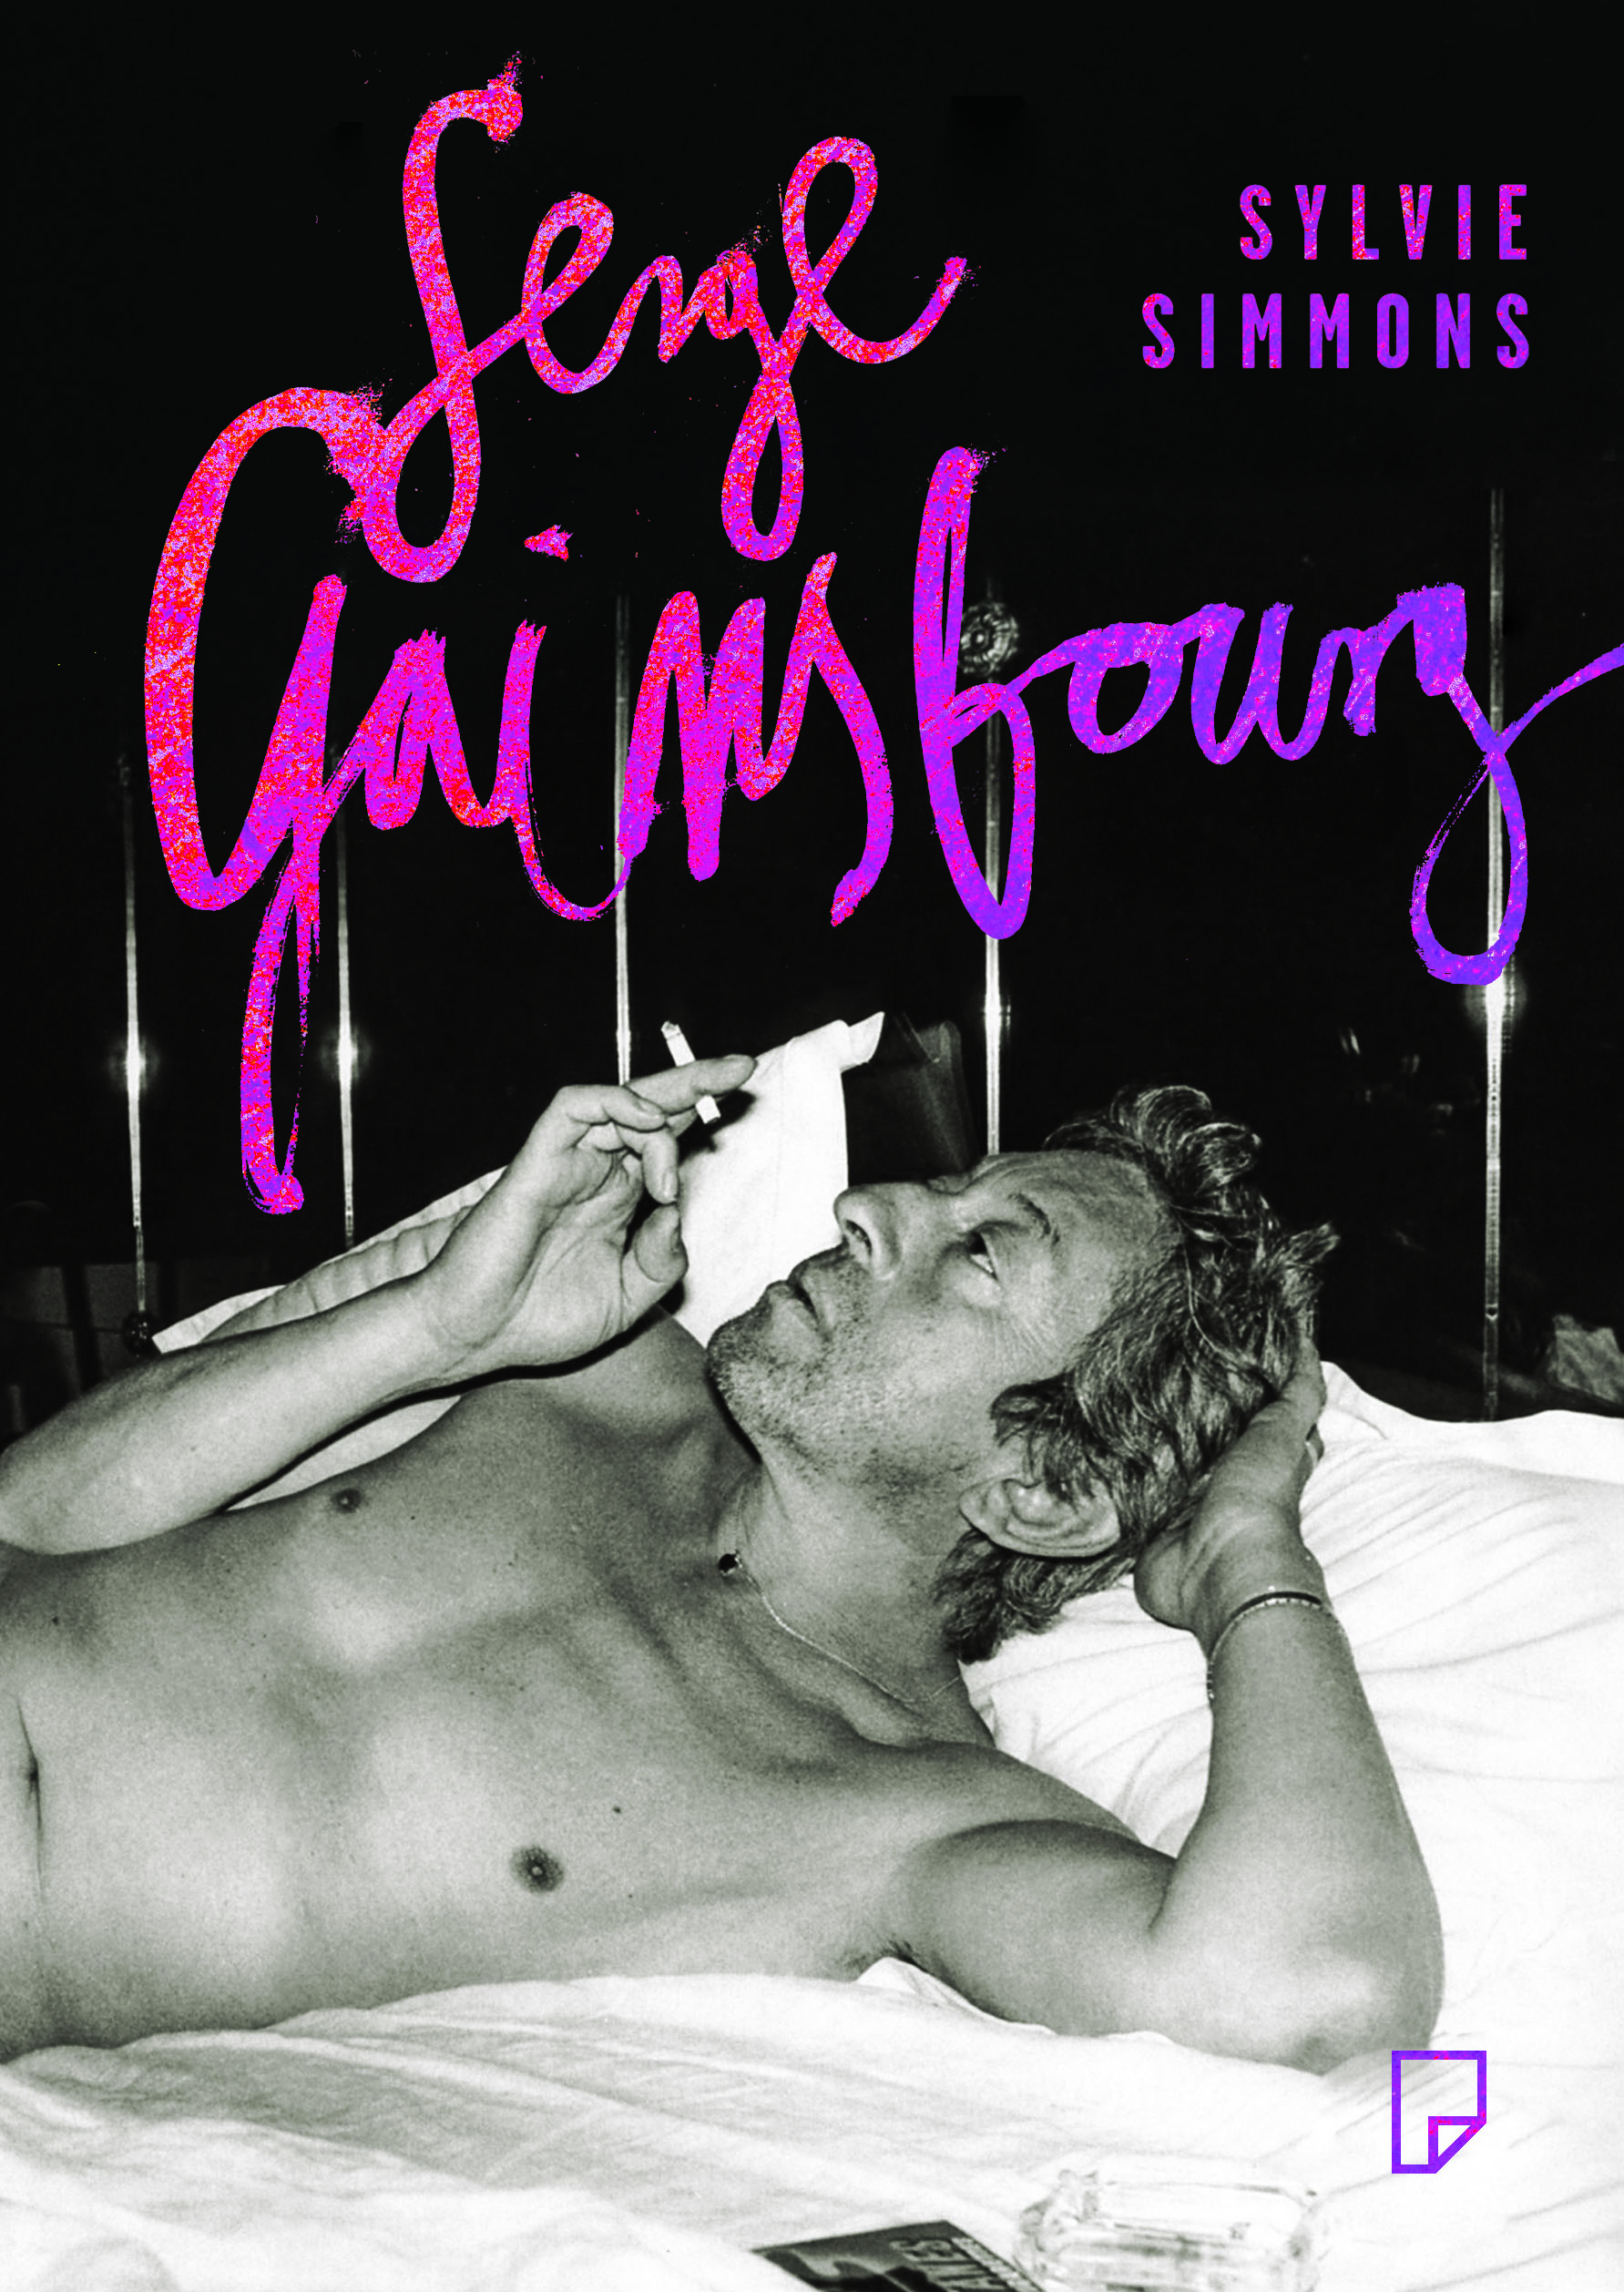 Serge Gainsbourg Sylvie Simmons (źródło: materiał prasowy wydawcy)